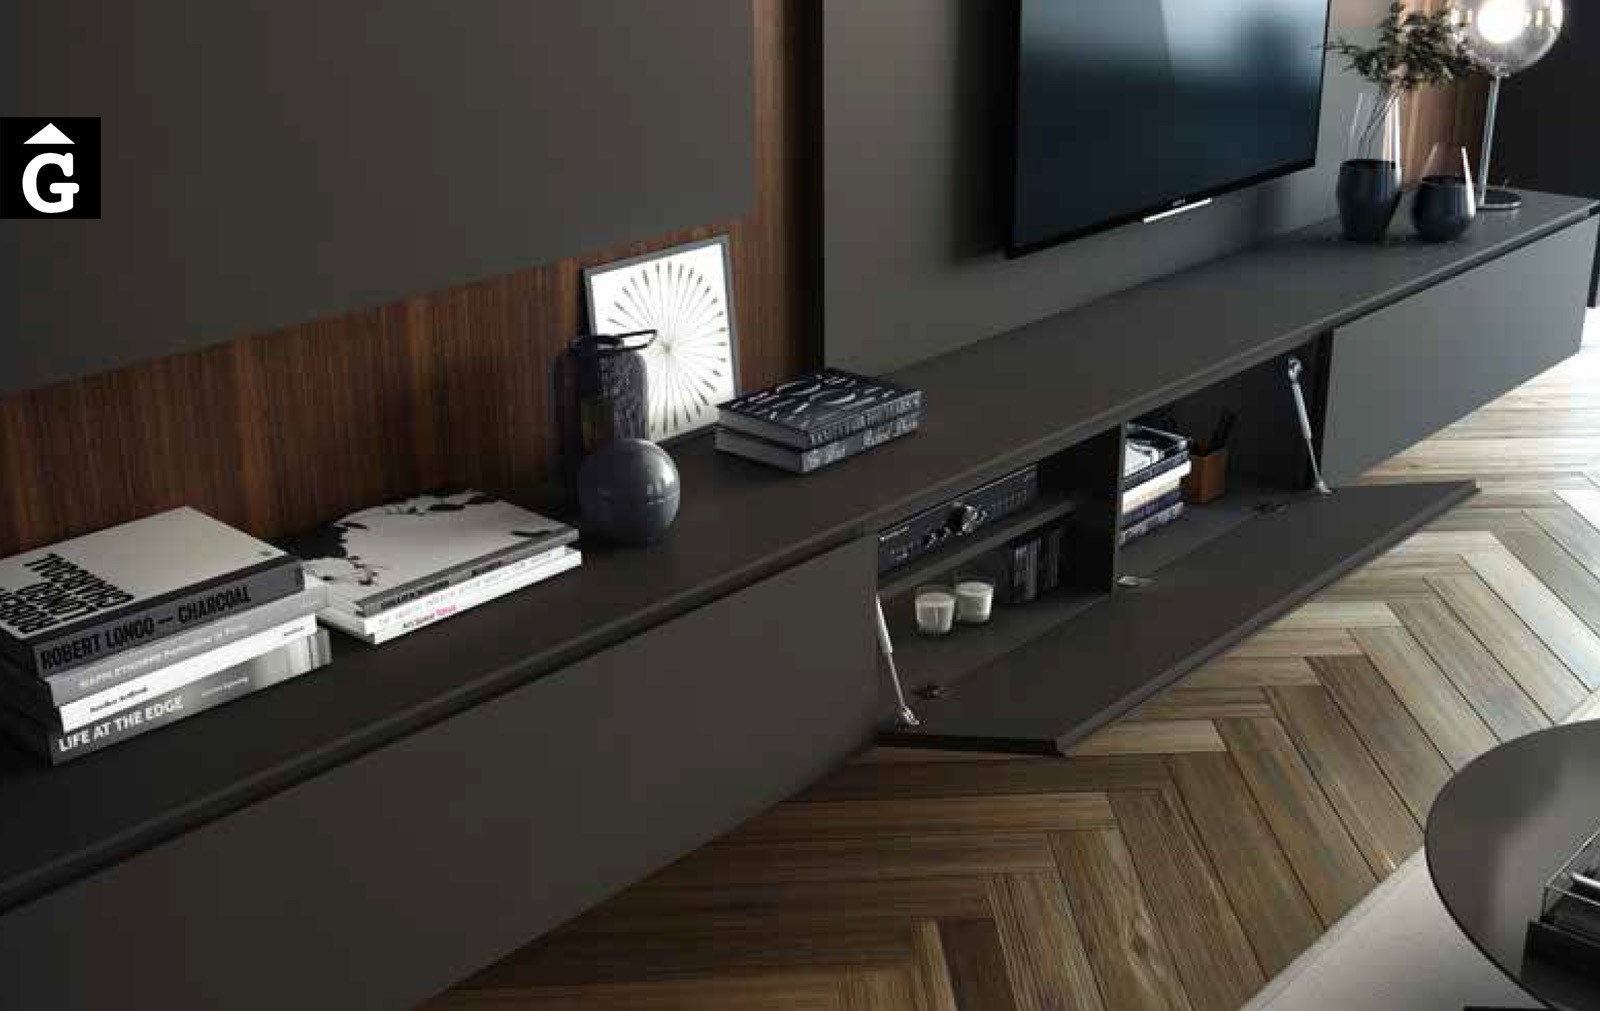 20 1 Area mobles Ciurans per mobles Gifreu programa modular disseny atemporal realitzat amb materials i ferratges de qualitat estil modern minimal